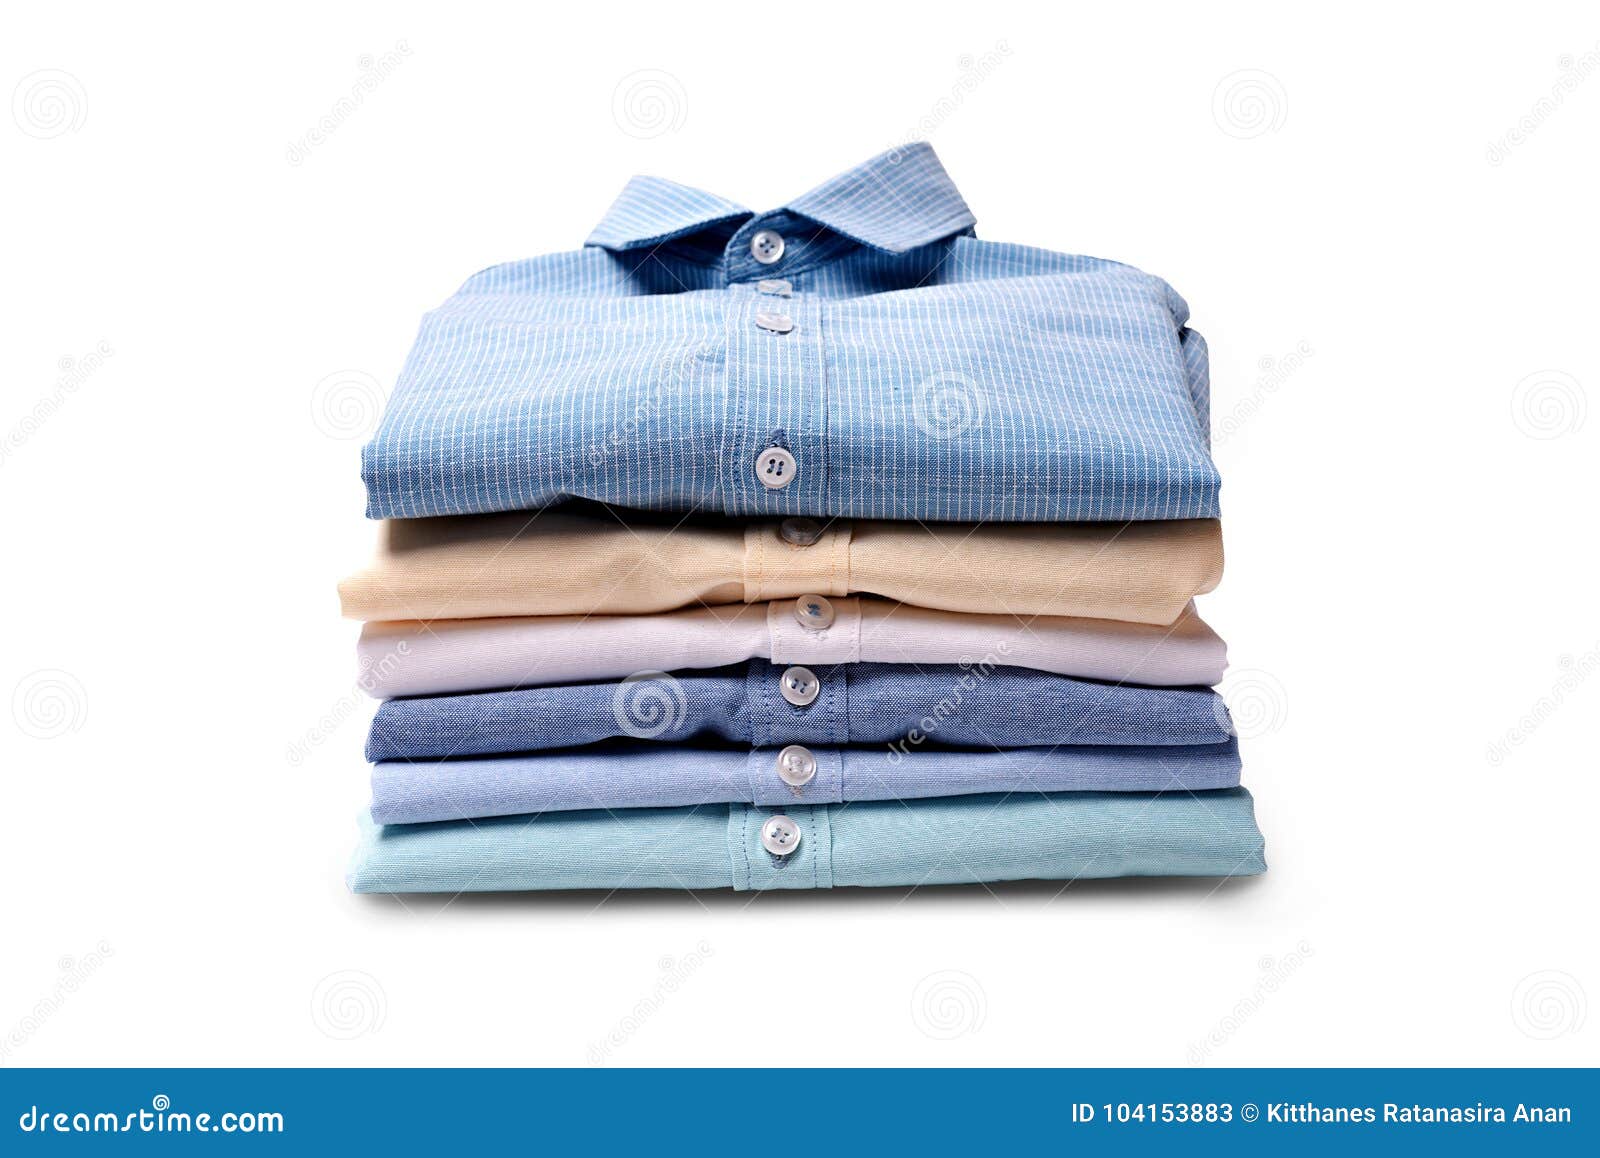 535 Men's Dress Shirts Photos - Free ...